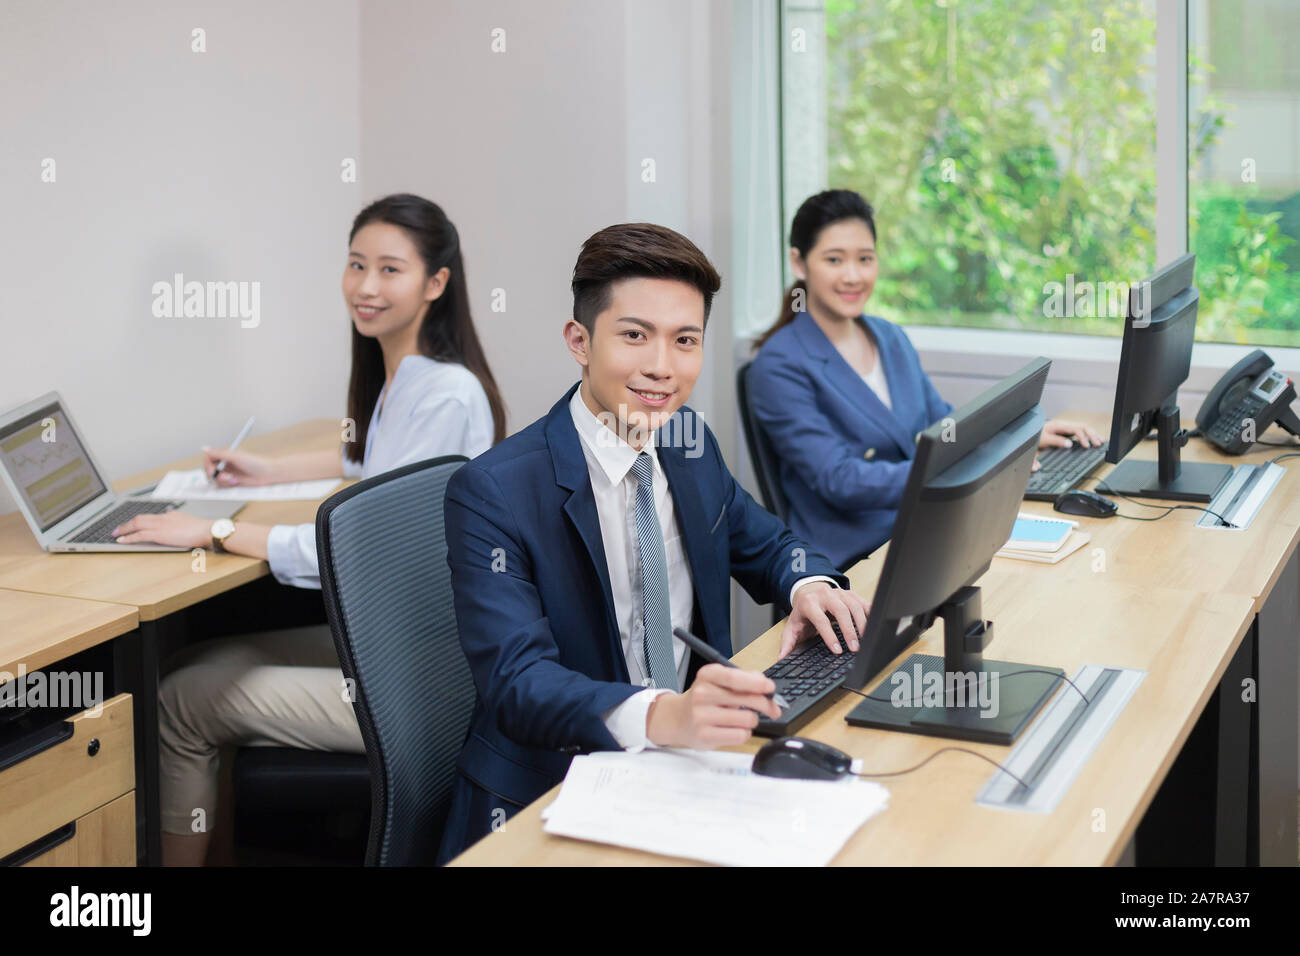 Portrait d'un groupe de trois jeune homme et femme d'affaires assis à un bureau dans un bureau et looking at camera Banque D'Images